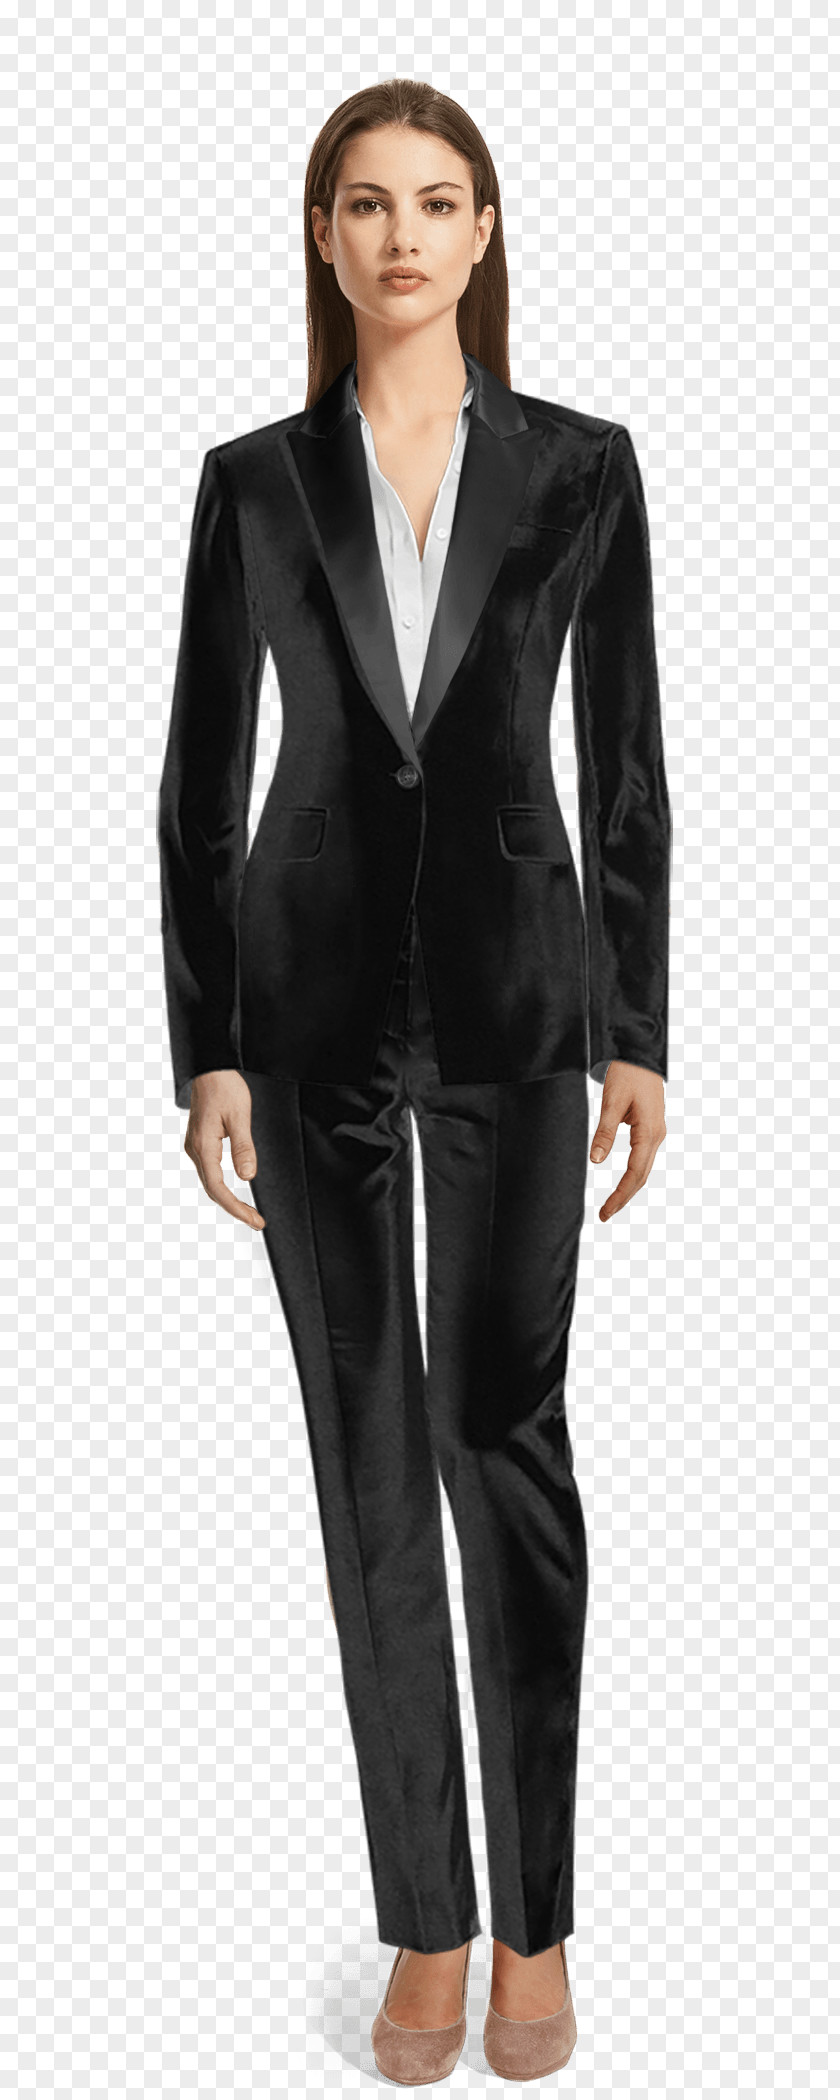 Suit Woman Lapel Tuxedo Blazer Clothing PNG